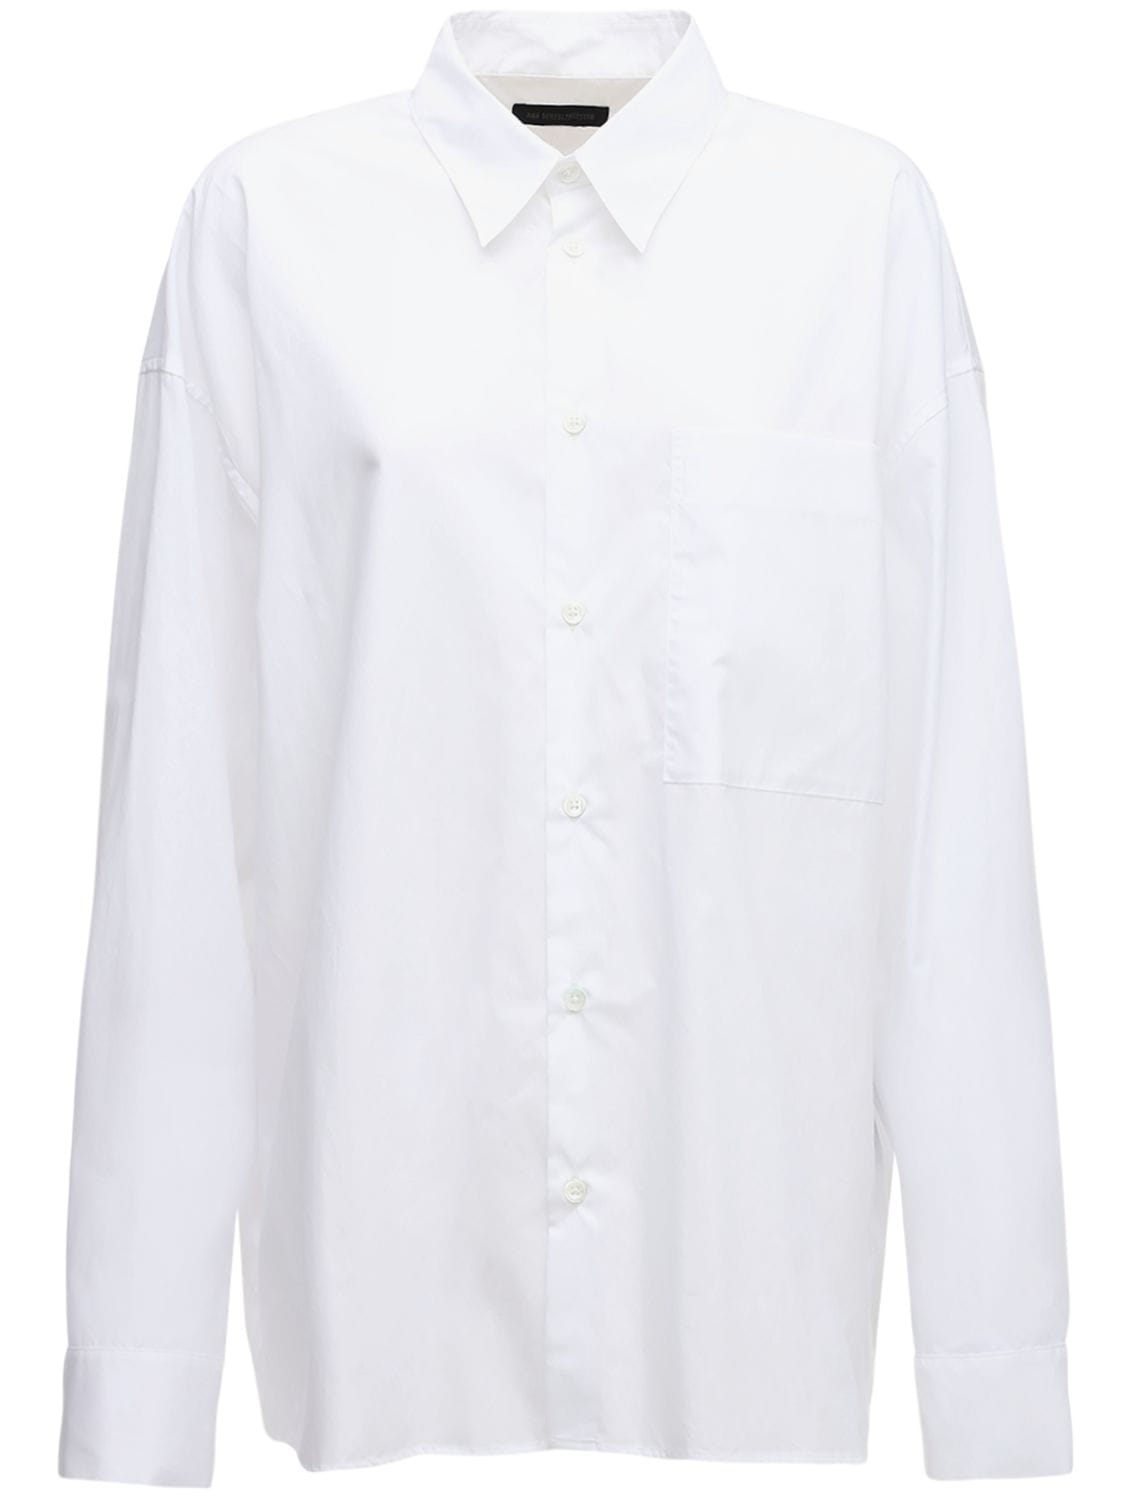 ANN DEMEULEMEESTER 大廓型不对称棉质府绸衬衫,72I51J019-MDAX0